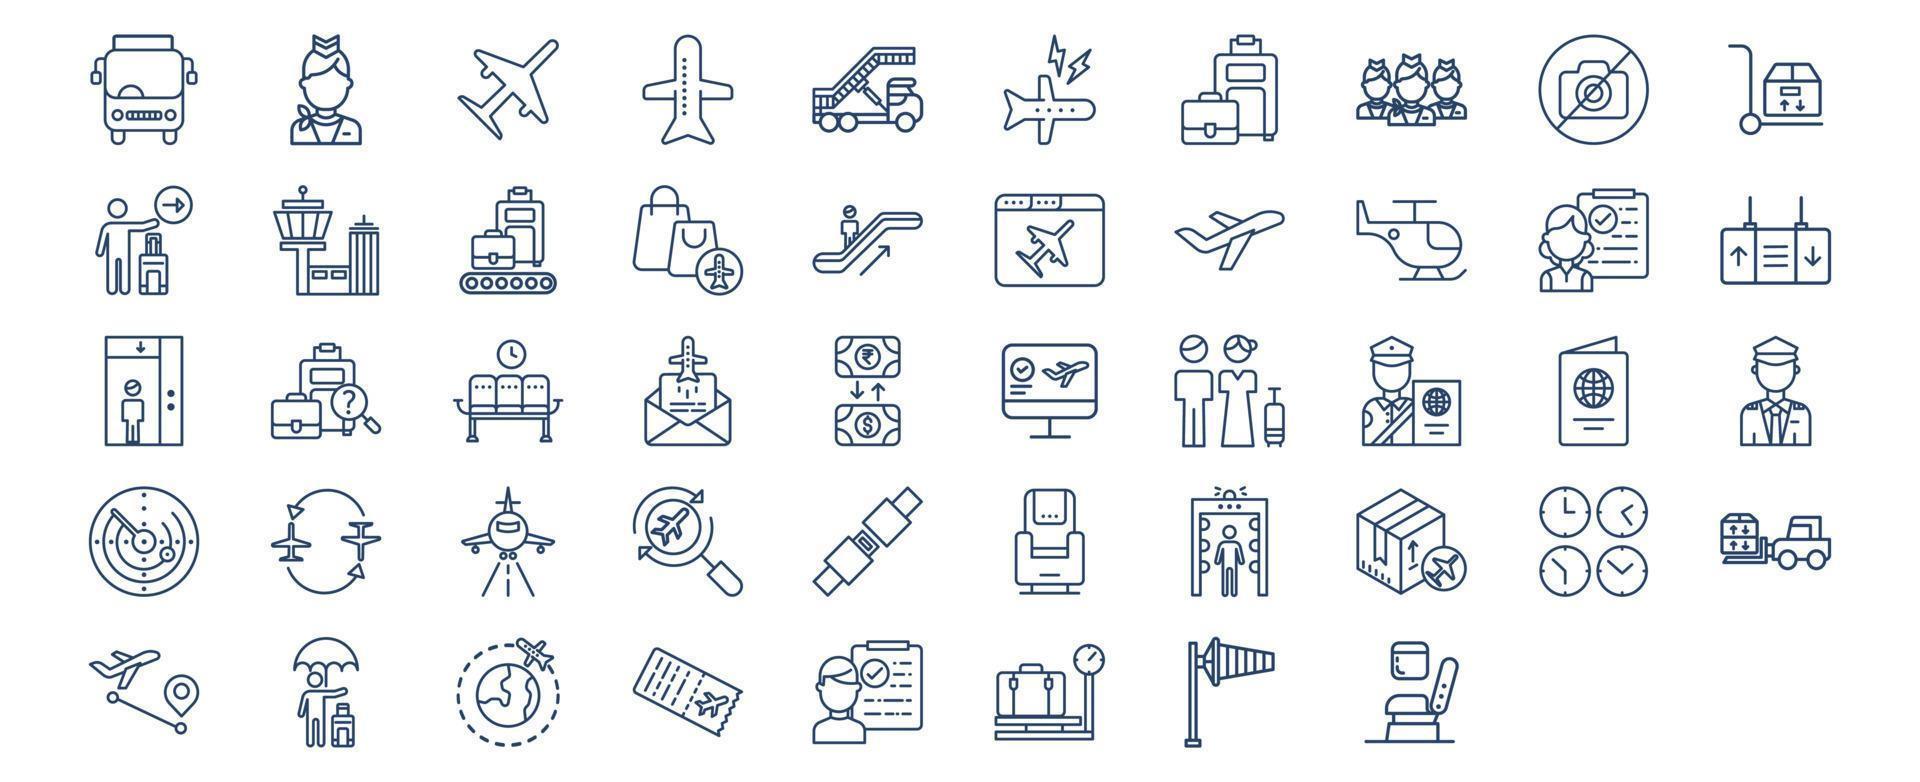 verzameling van pictogrammen verwant naar luchtvaart reizen en luchthaven, inclusief pictogrammen Leuk vinden lucht gastvrouw, vliegtuigen, bagage, plicht vrij, passagier en meer. vector illustraties, pixel perfect reeks